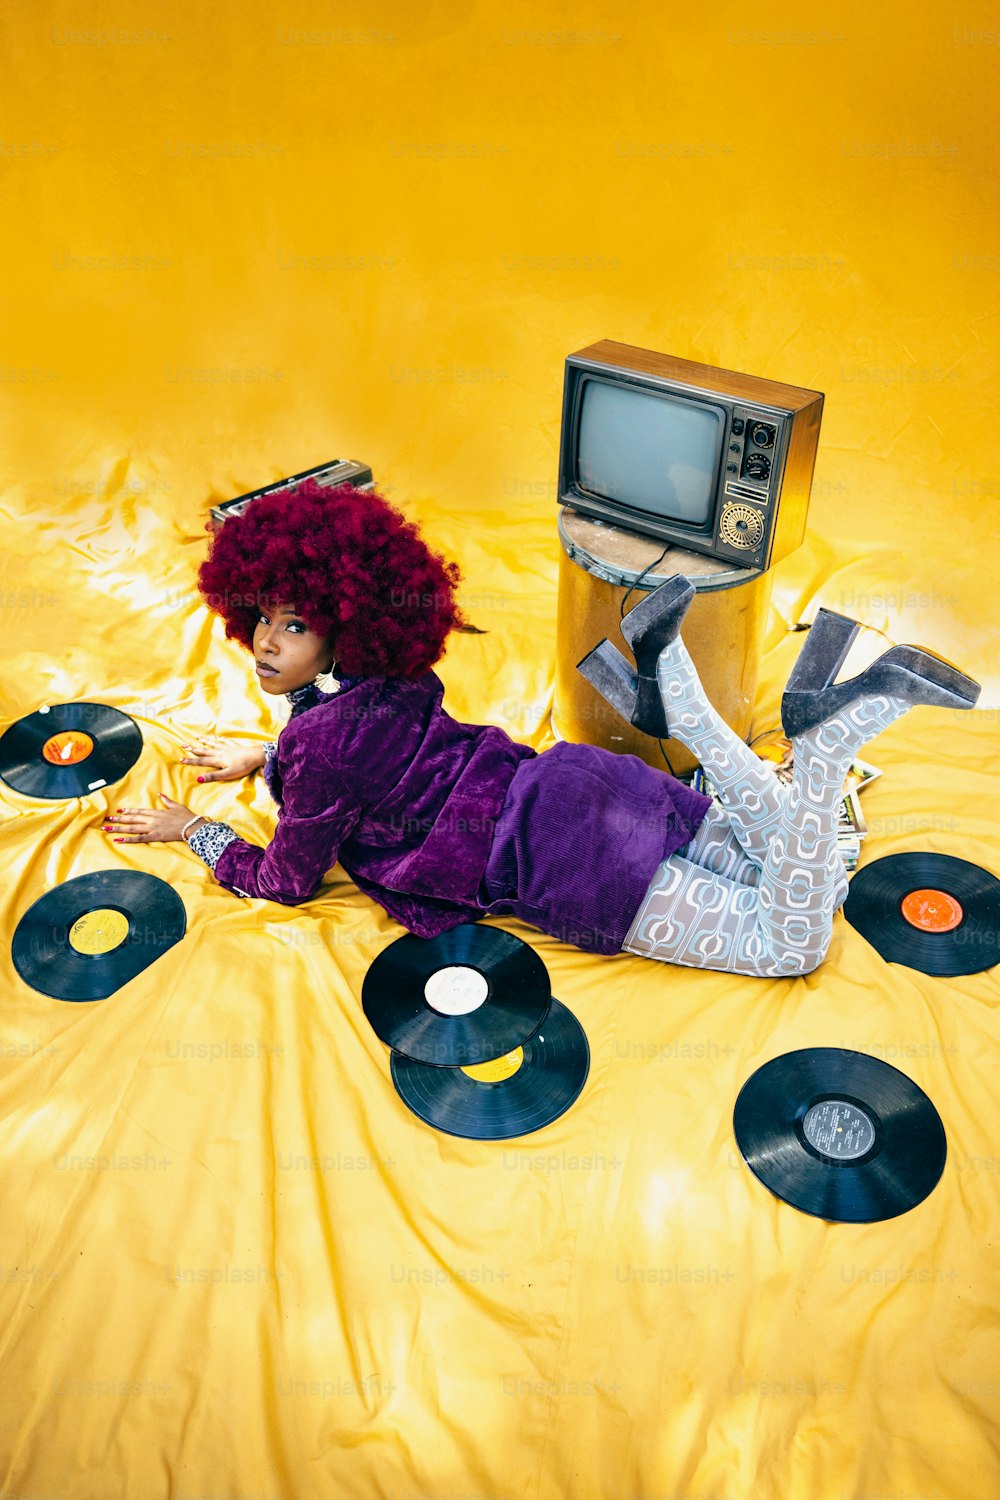 une femme allongée sur un lit couvert de disques